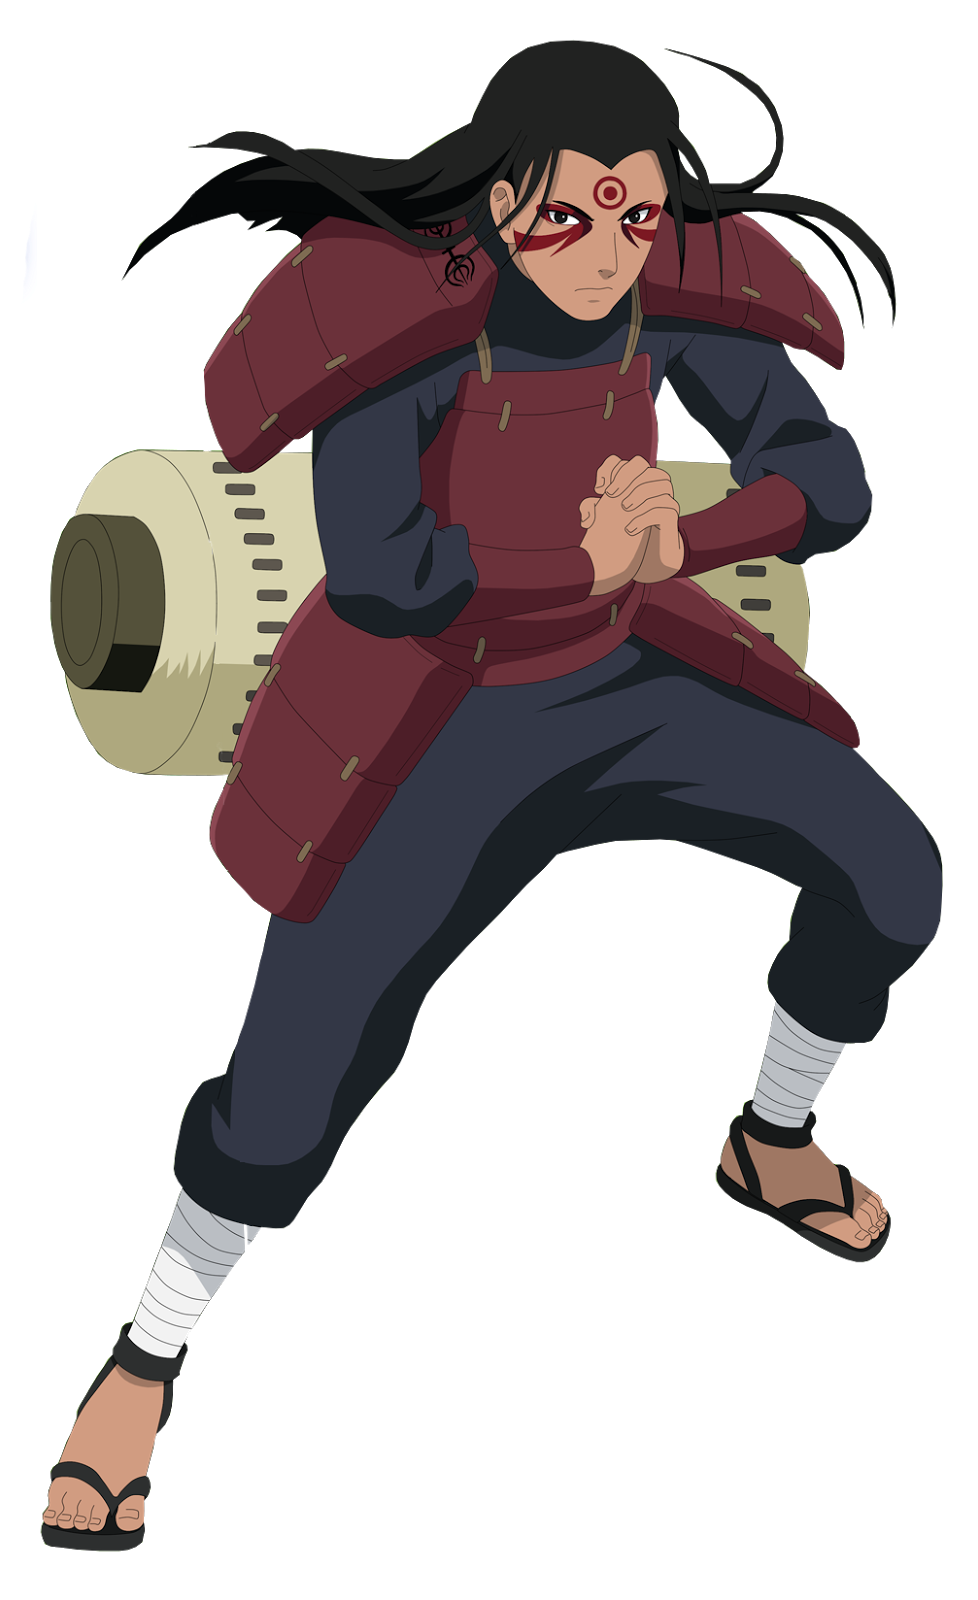 Lista de Hokage Primeiro Hokage ￼ Hashirama Senju, o Primeiro Hokage Artigo  principal: Hashirama Senju Hashirama Senju (千手柱间, Senju Hashirama) foi um  ninja lendário que veio doclã Senju que, juntament